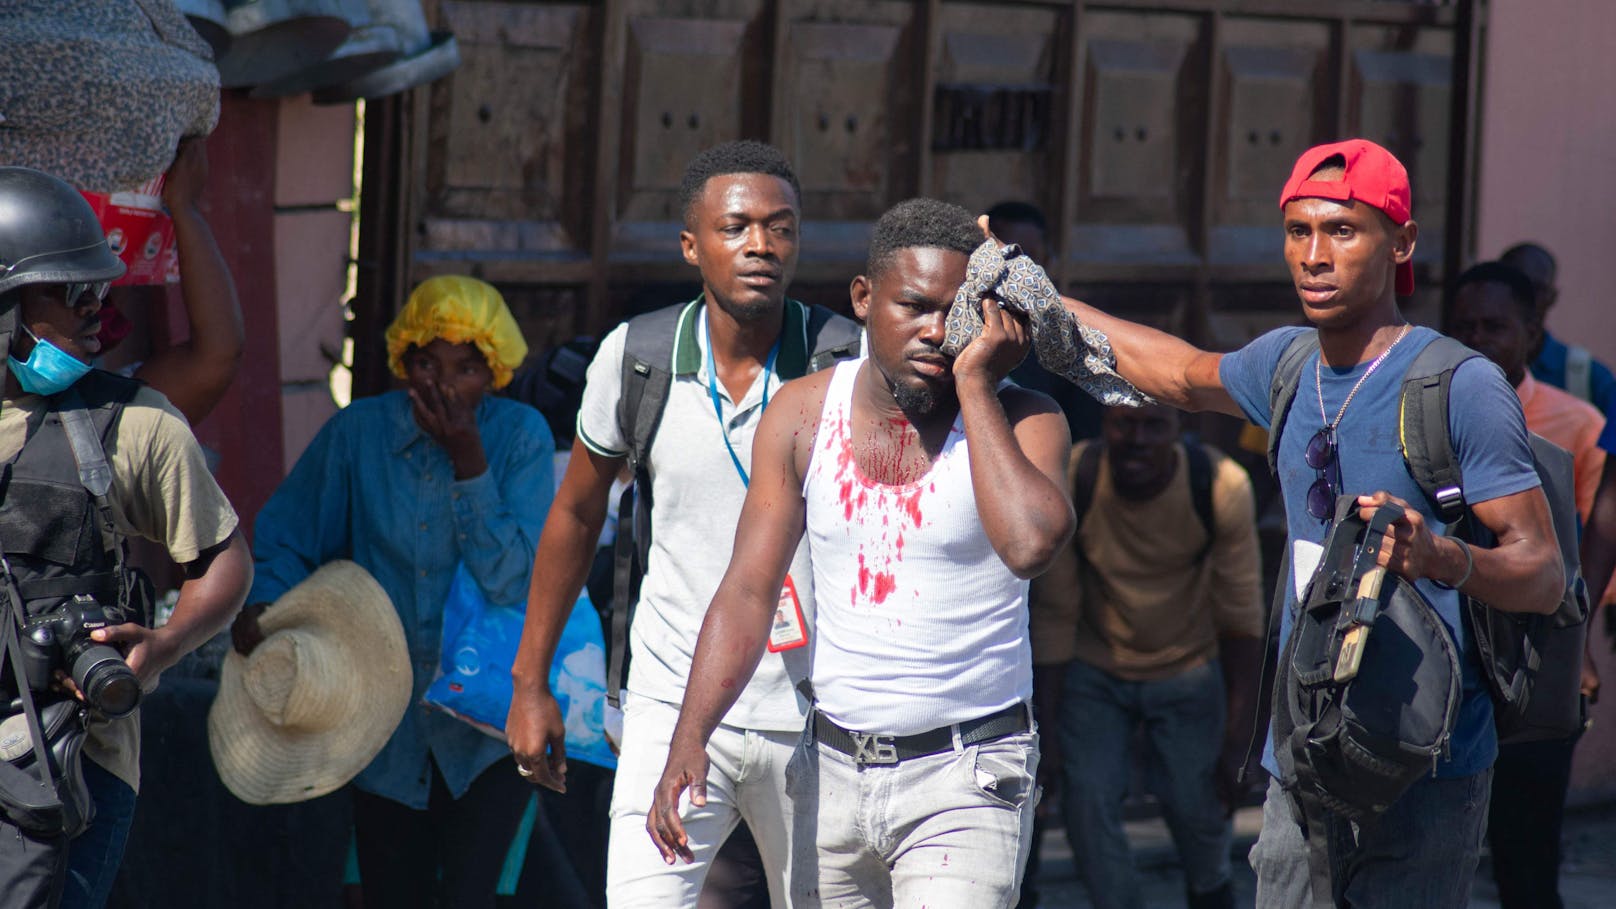 In Haiti eskaliert seit Tagen die Bandengewalt. Die Auseinandersetzungen treffen zahlreiche zivile Opfer.